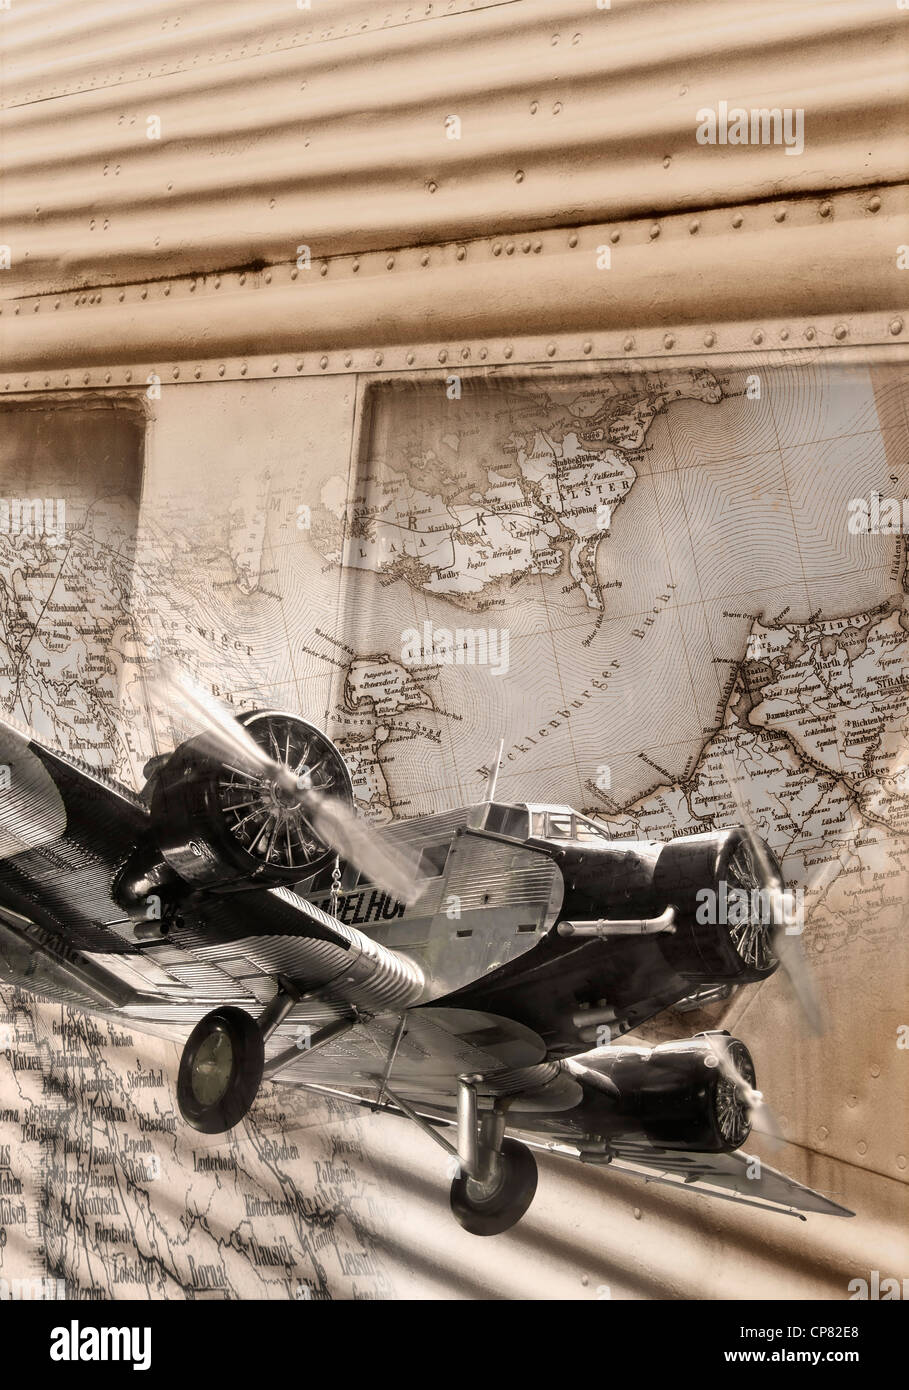 Verfassen einer Junkers 52 Portionen von einer historischen Karte von Deutschland Stockfoto